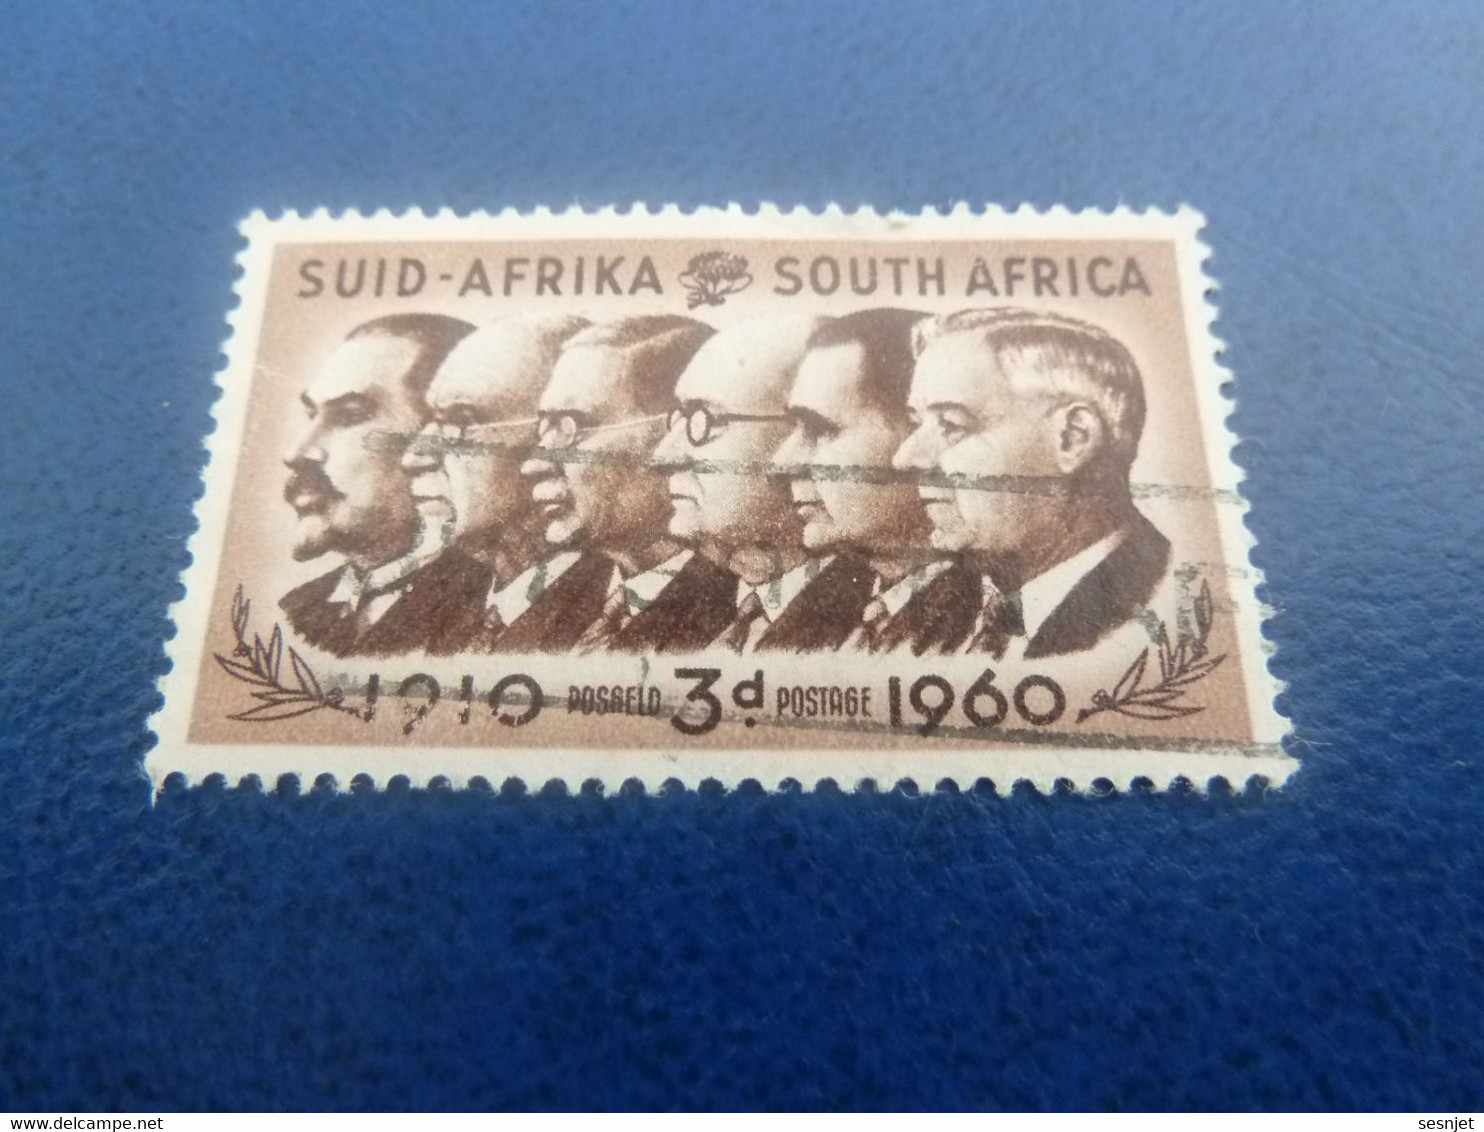 Suid-Africa - South Africa - Célébrités - 3 D. - Postage - Brun Et Brun Foncé - Oblitéré - Année 1960 - - Usados